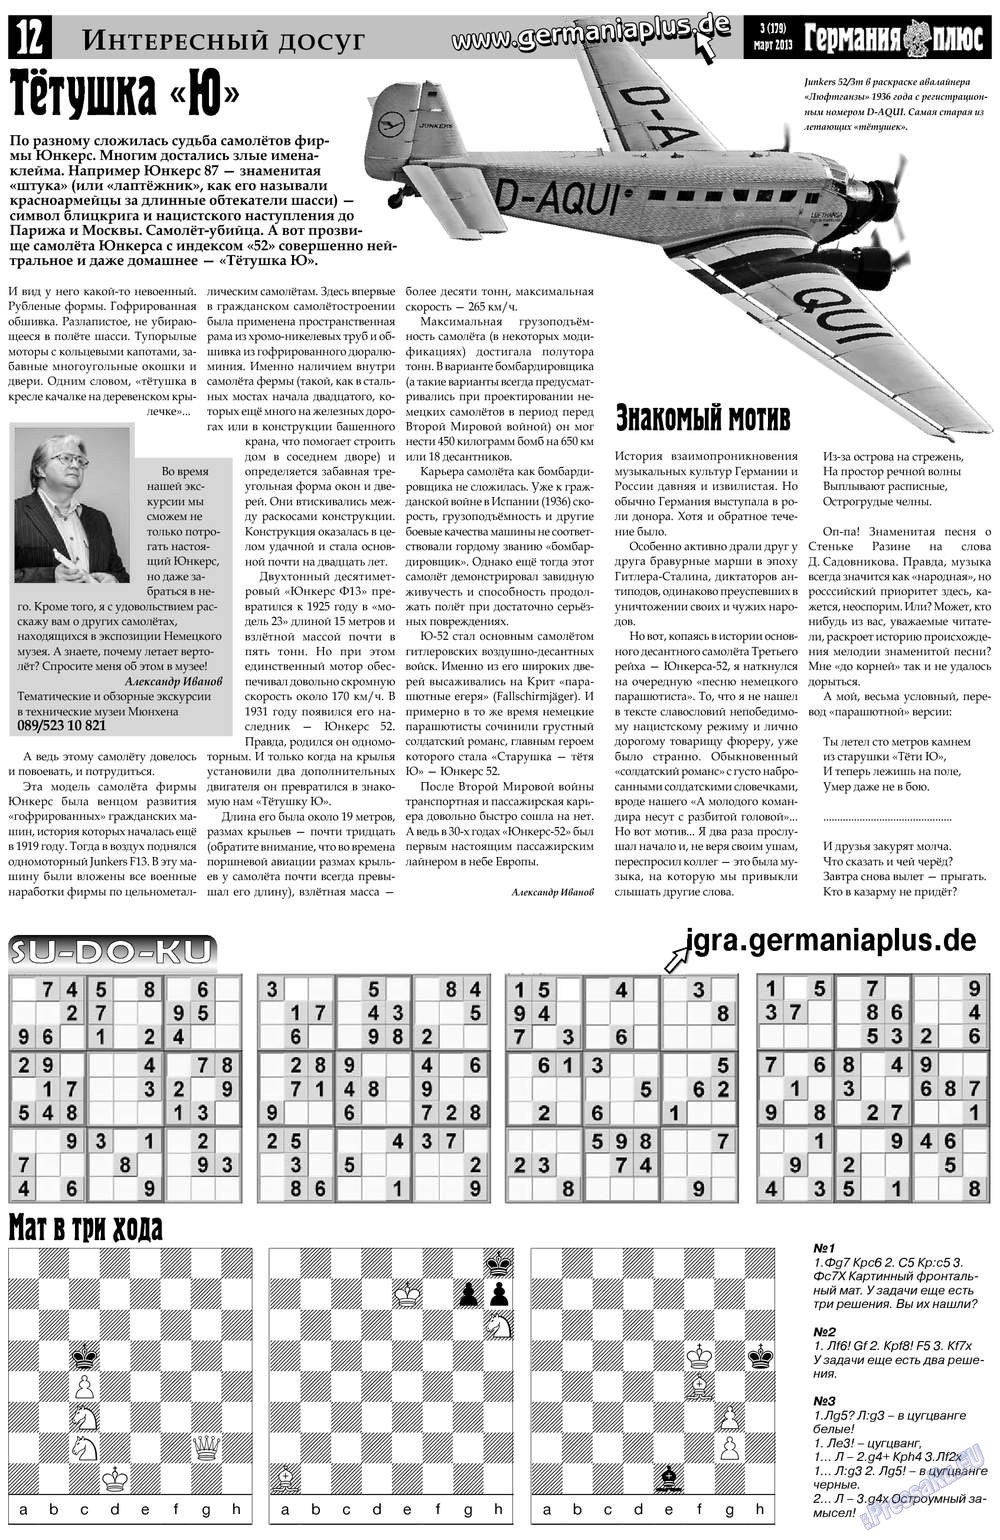 Германия плюс (газета). 2013 год, номер 3, стр. 12